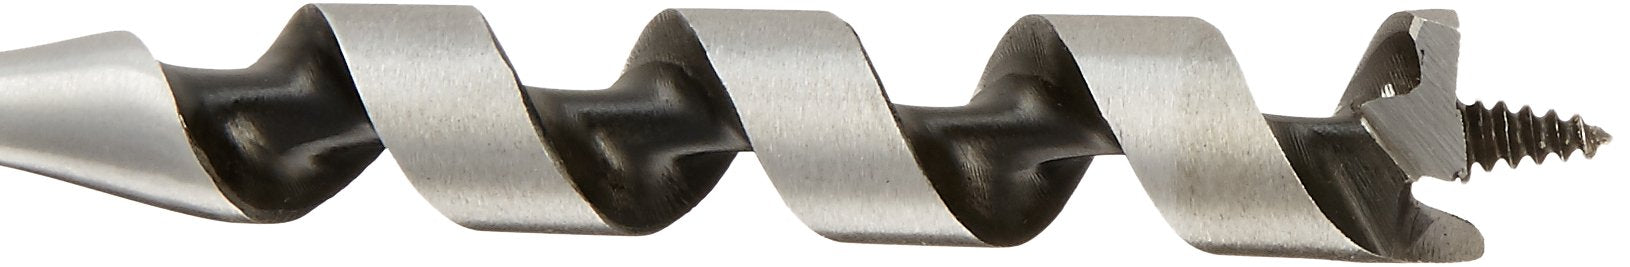 Irwin Industrial Tools 49913 I-100 13/16-Inch Auger Bit